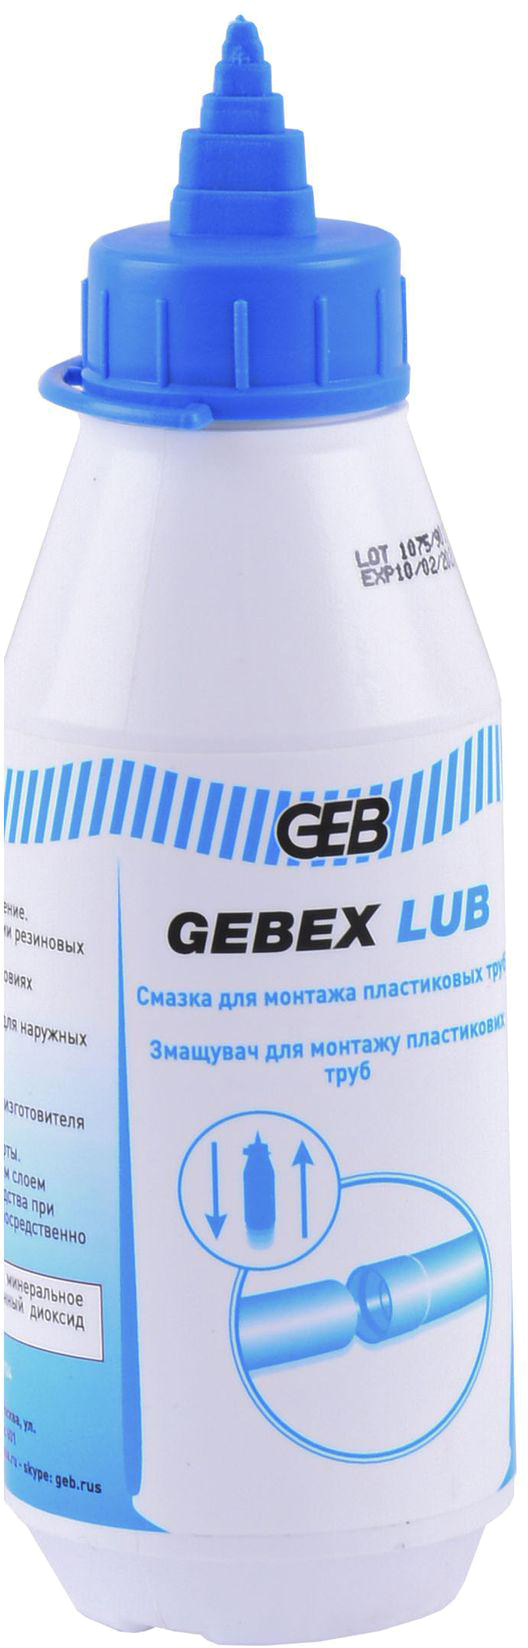 Смазка для труб GEB Gebex Lub 250 мл (504606) в интернет-магазине, главное фото